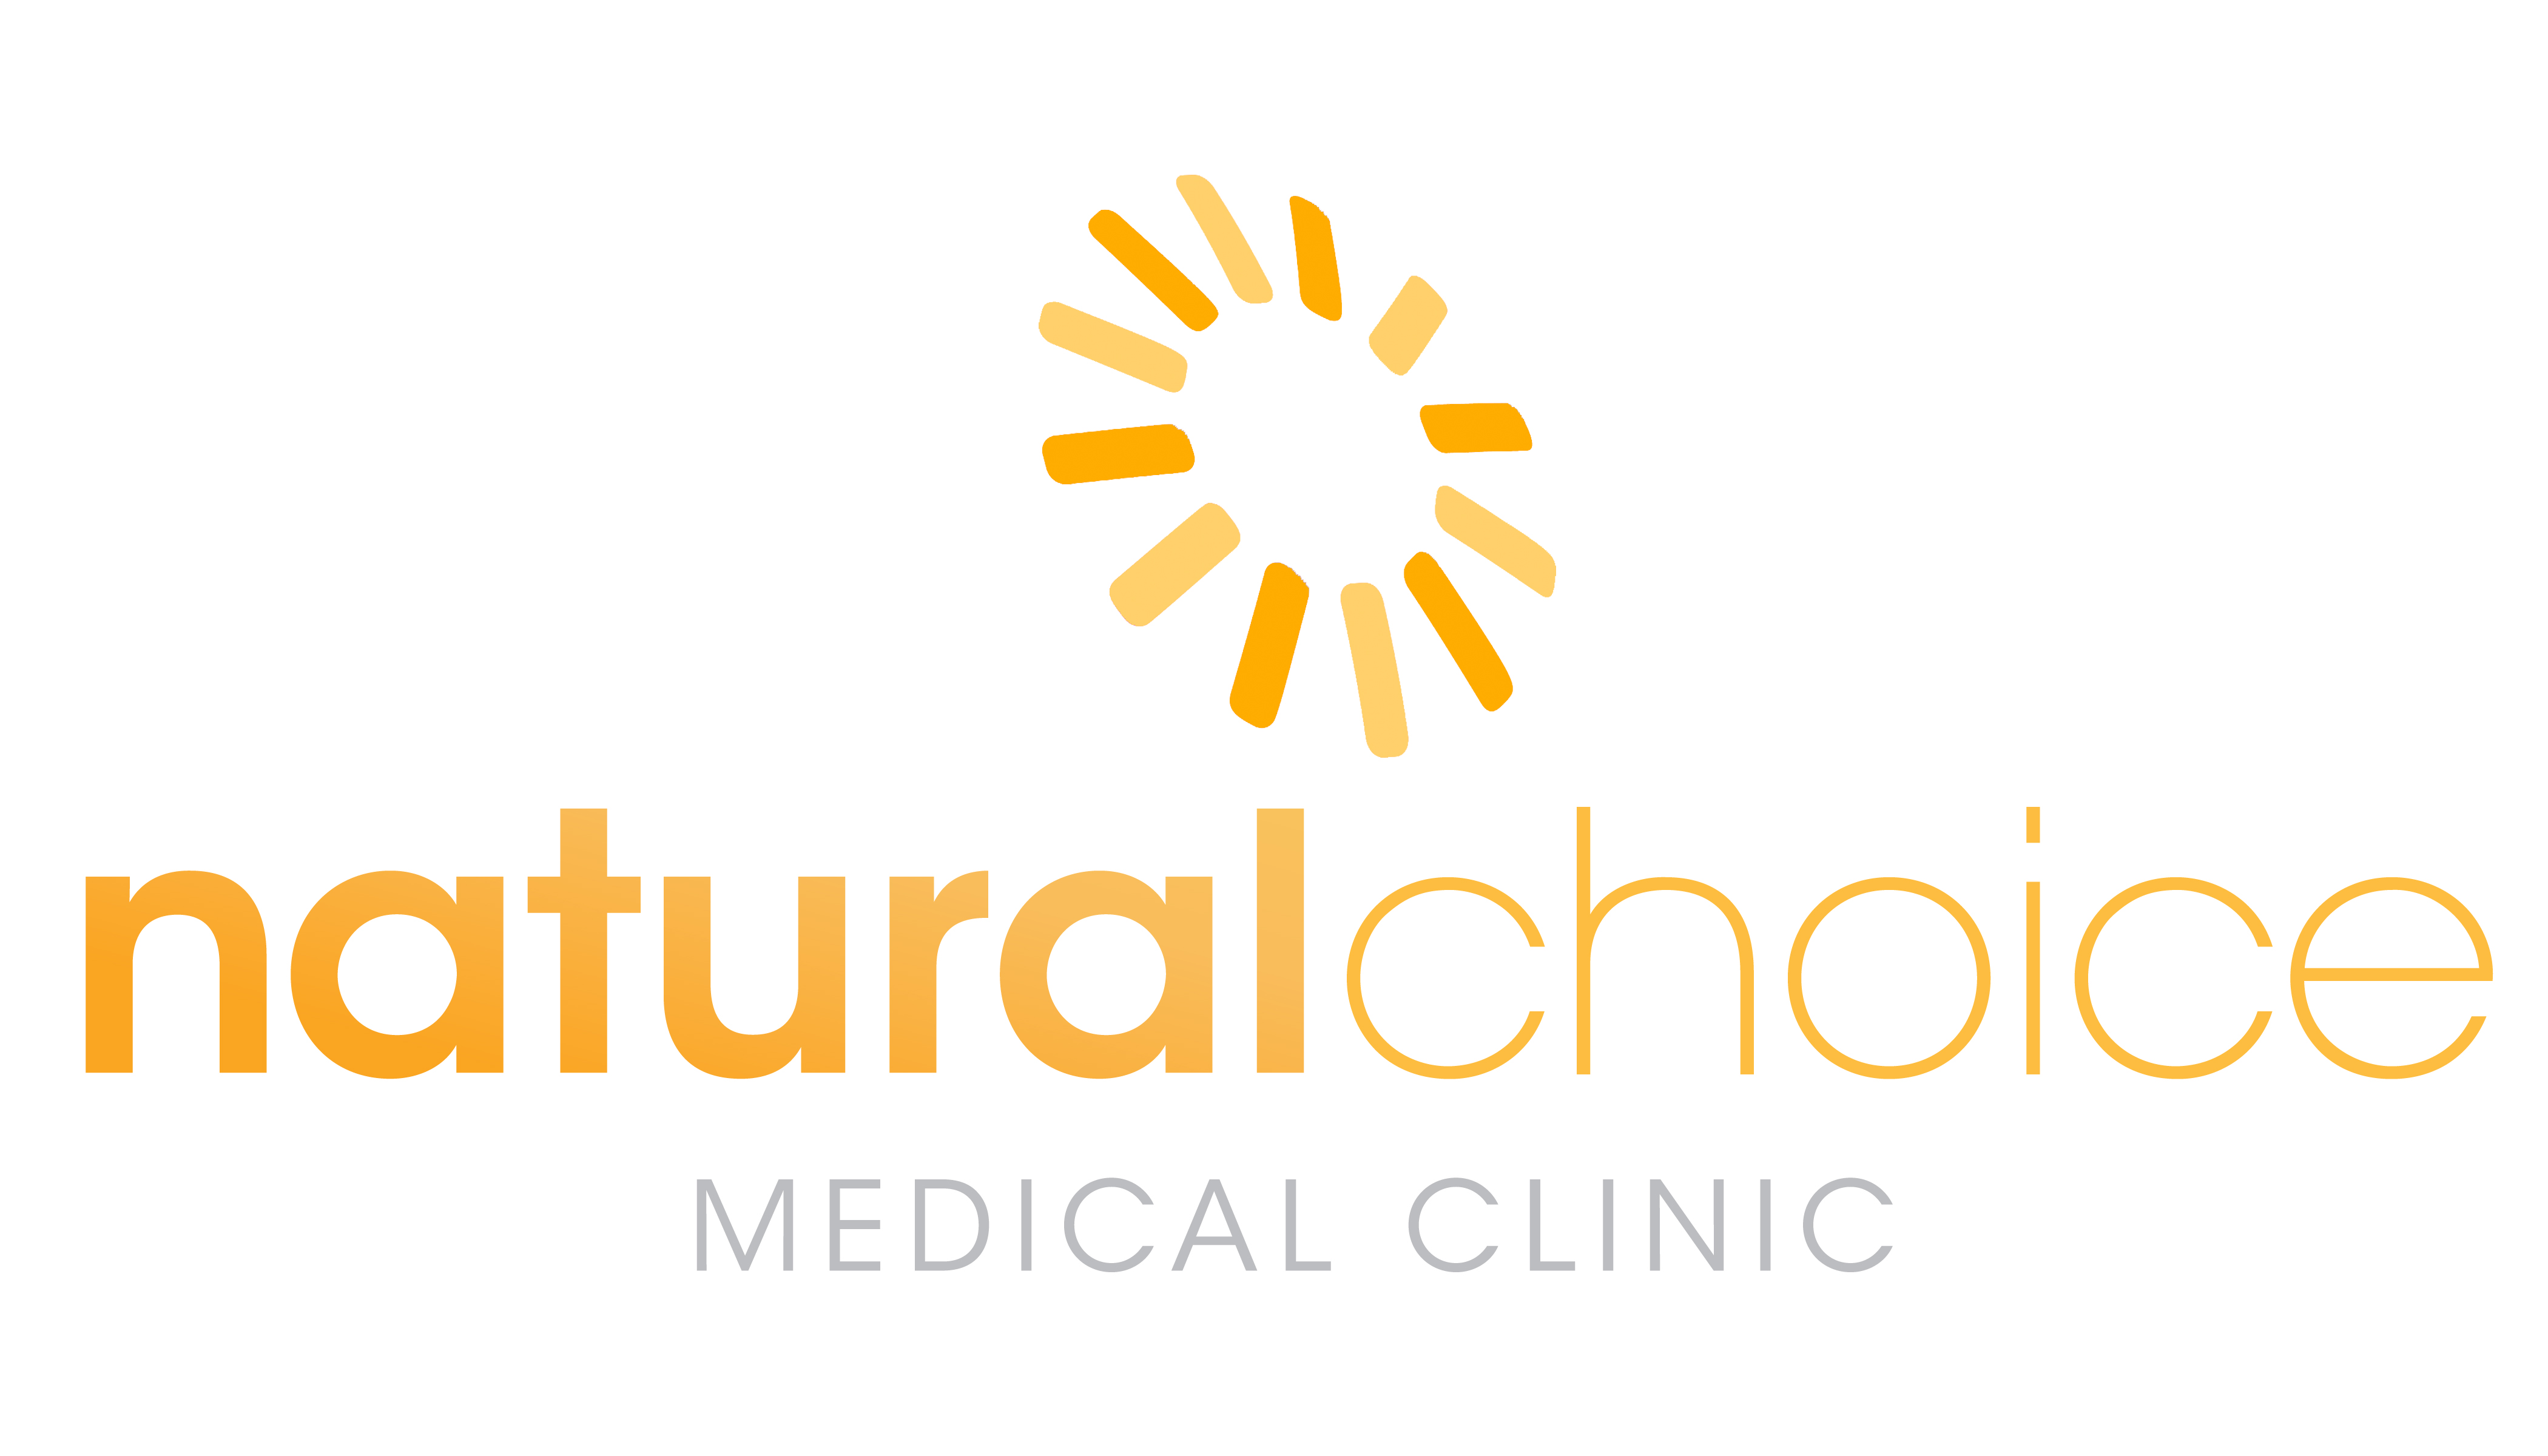 Natural Choice Medical Clinic